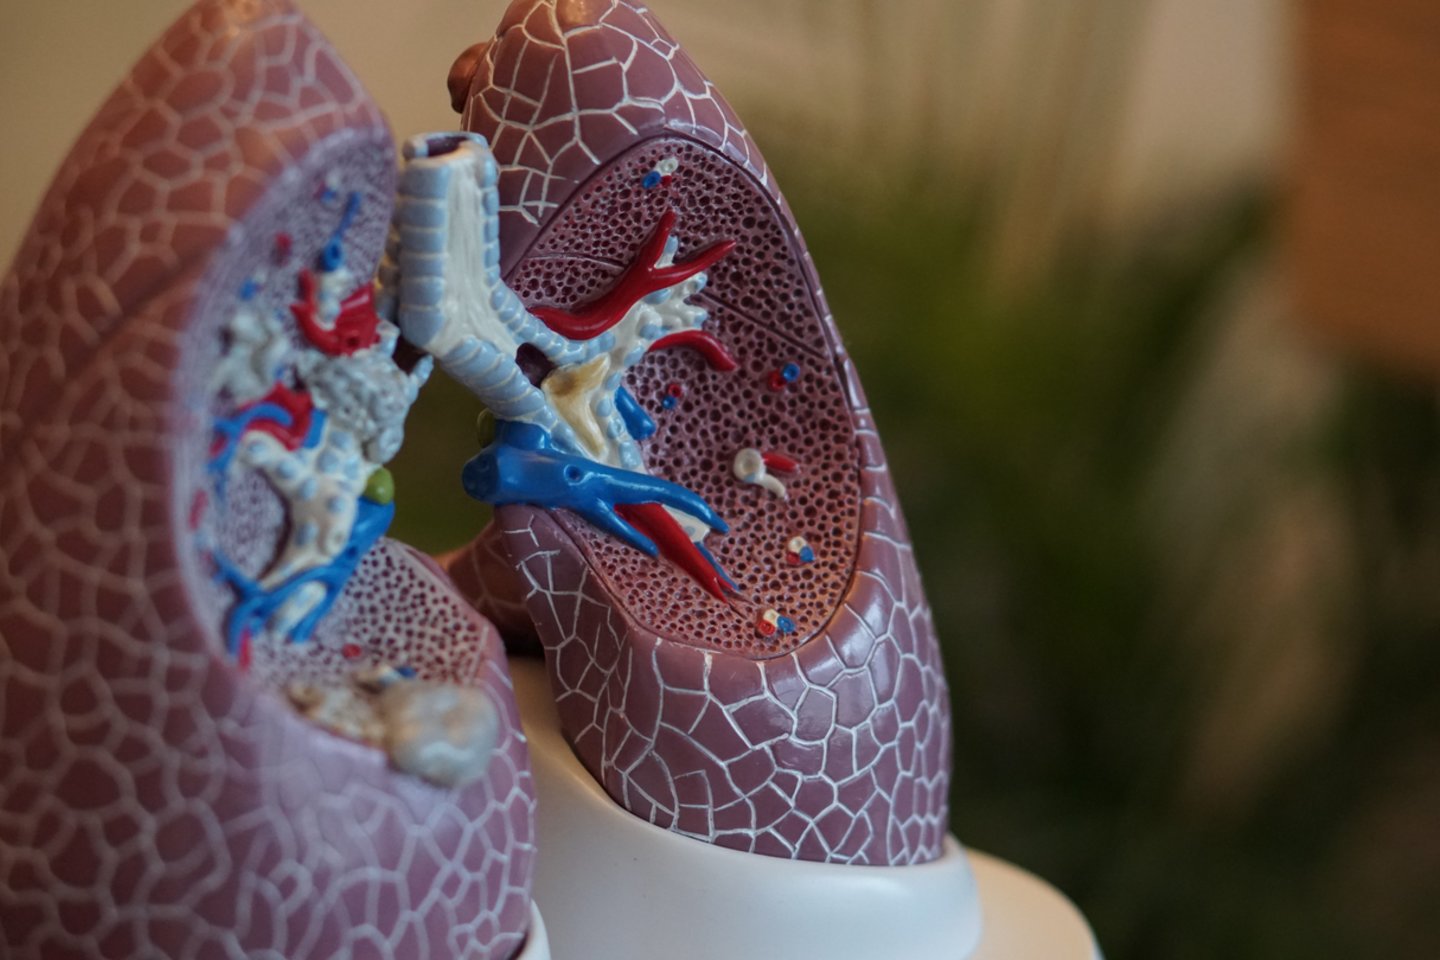 KTU alumnų įkurtame startuolyje KTU mokslininkai kuria neinvazinį plaučių ligų tyrimo sistemos prototipą.<br>Unsplash nuotr.